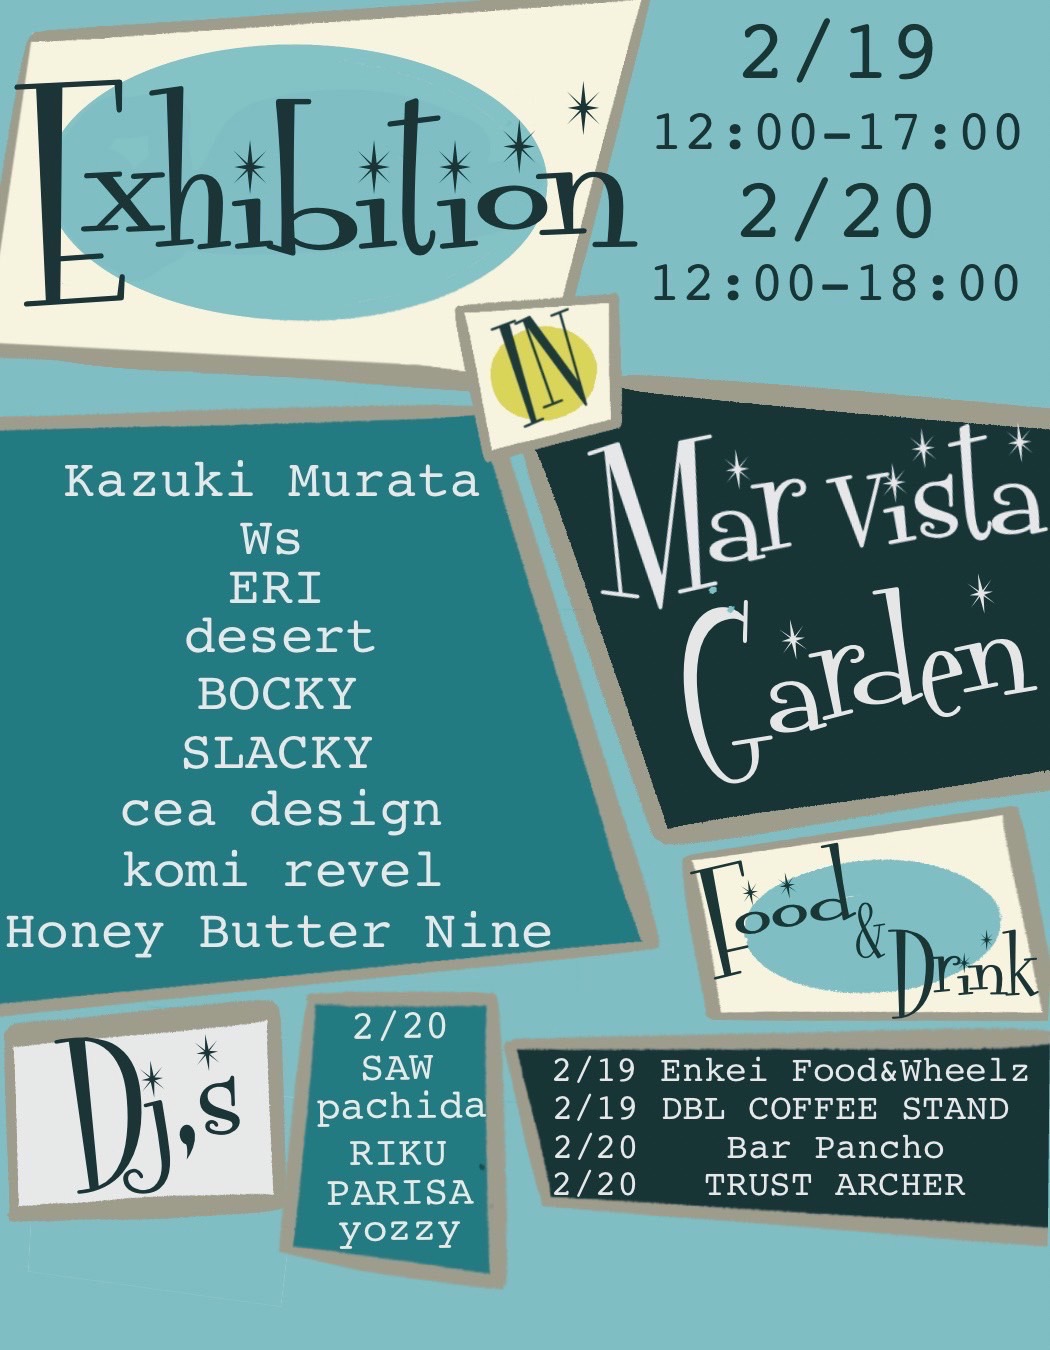 Exhibition in Marvista Garden